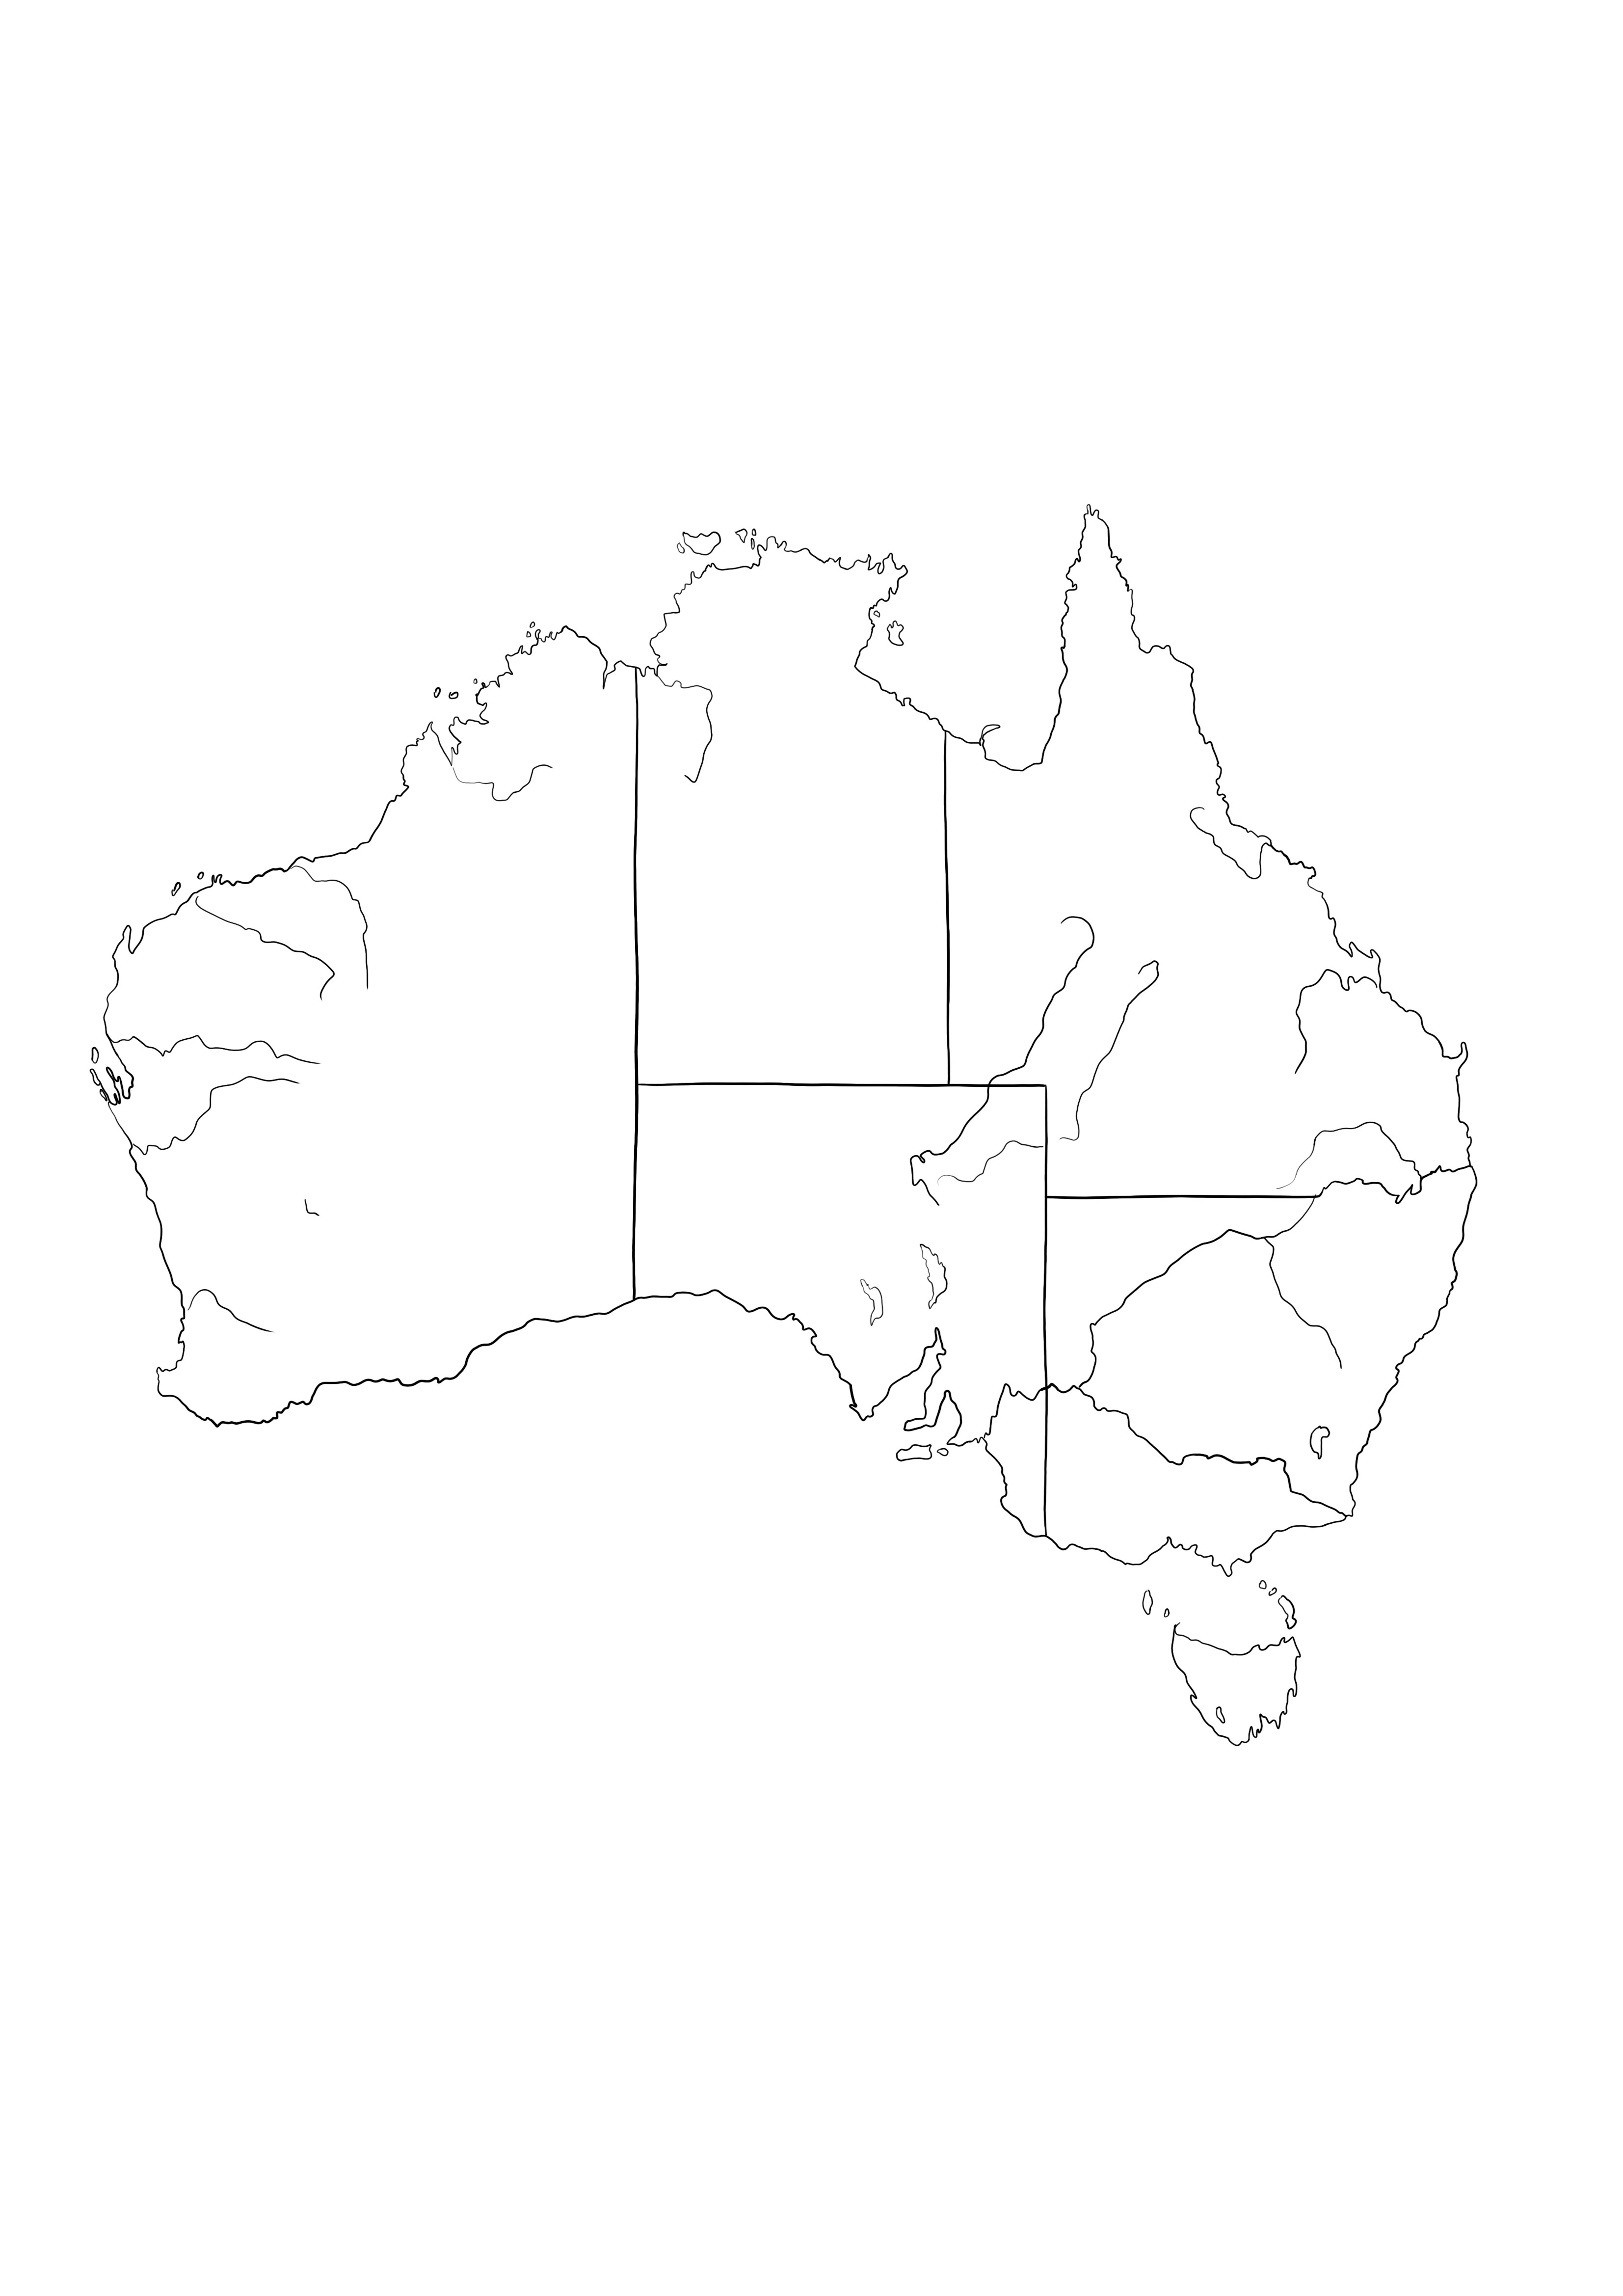 Peta Australia-mudah dicetak dan diwarnai secara gratis